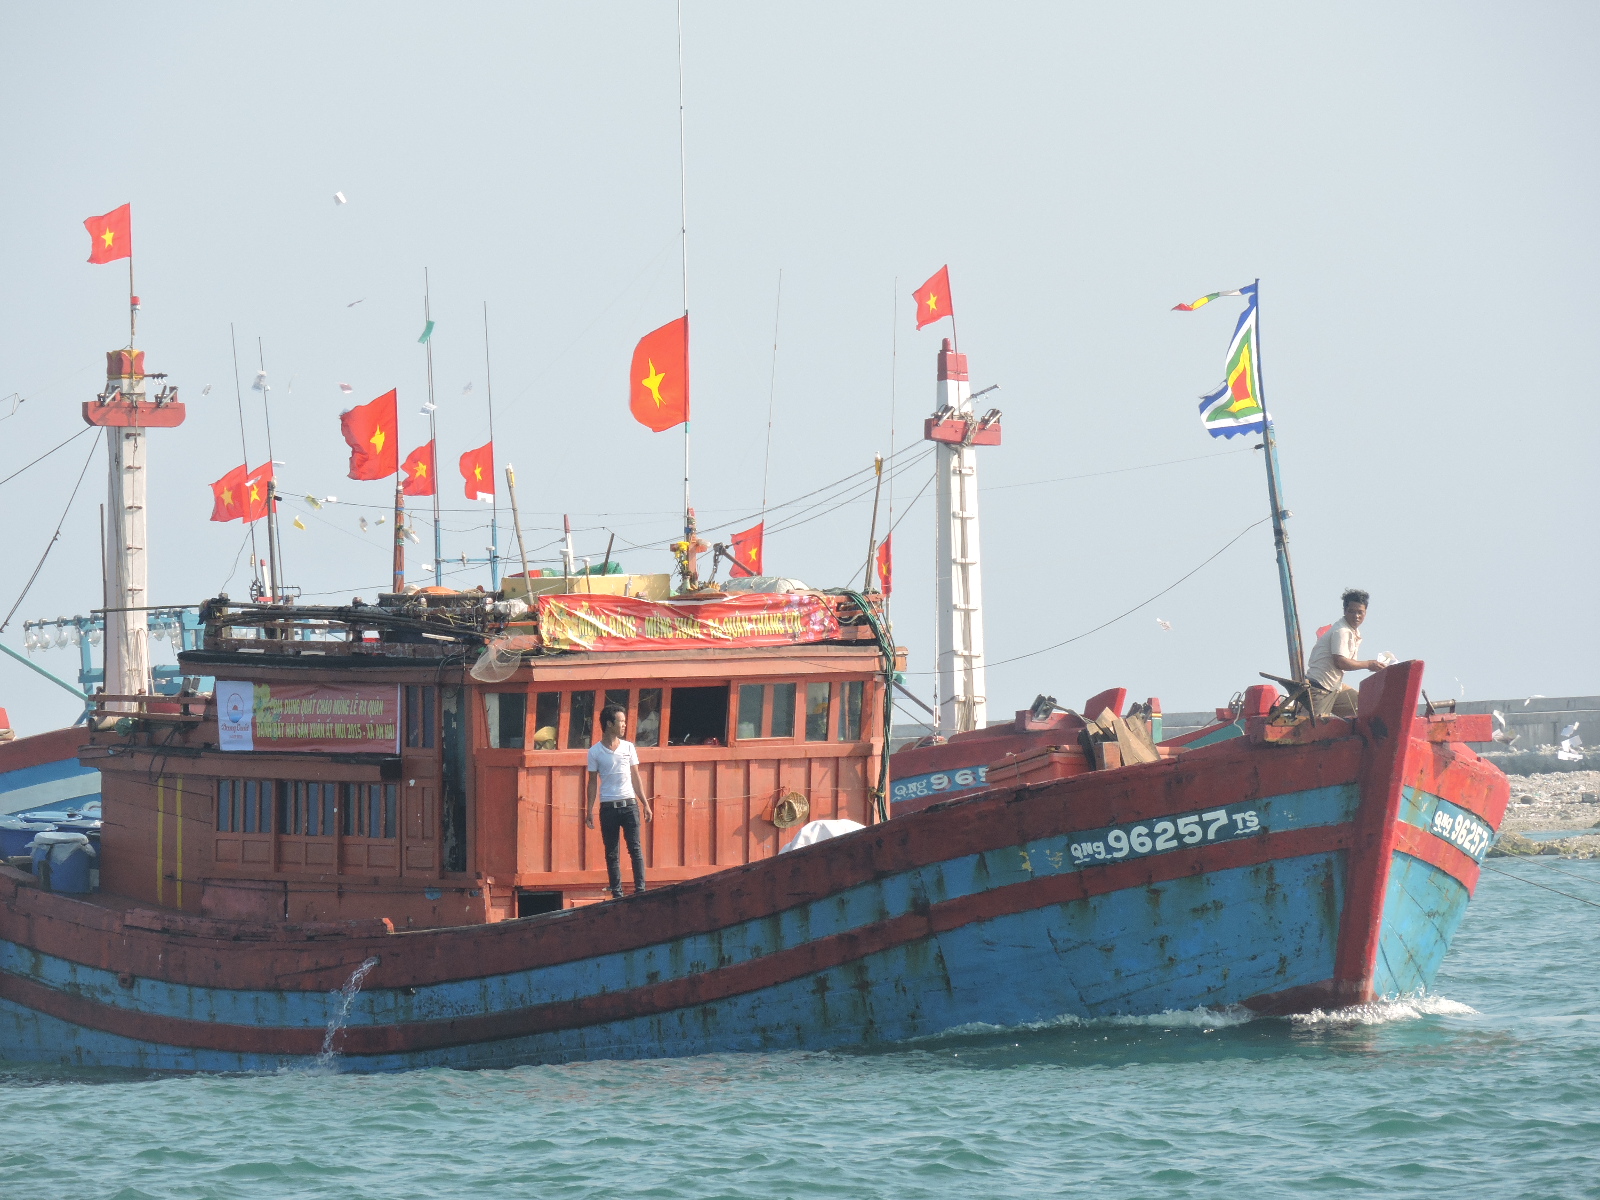 Ngư dân Lý Sơn nói không với khai thác hải sản bất hợp pháp tại vùng biển nước ngoài